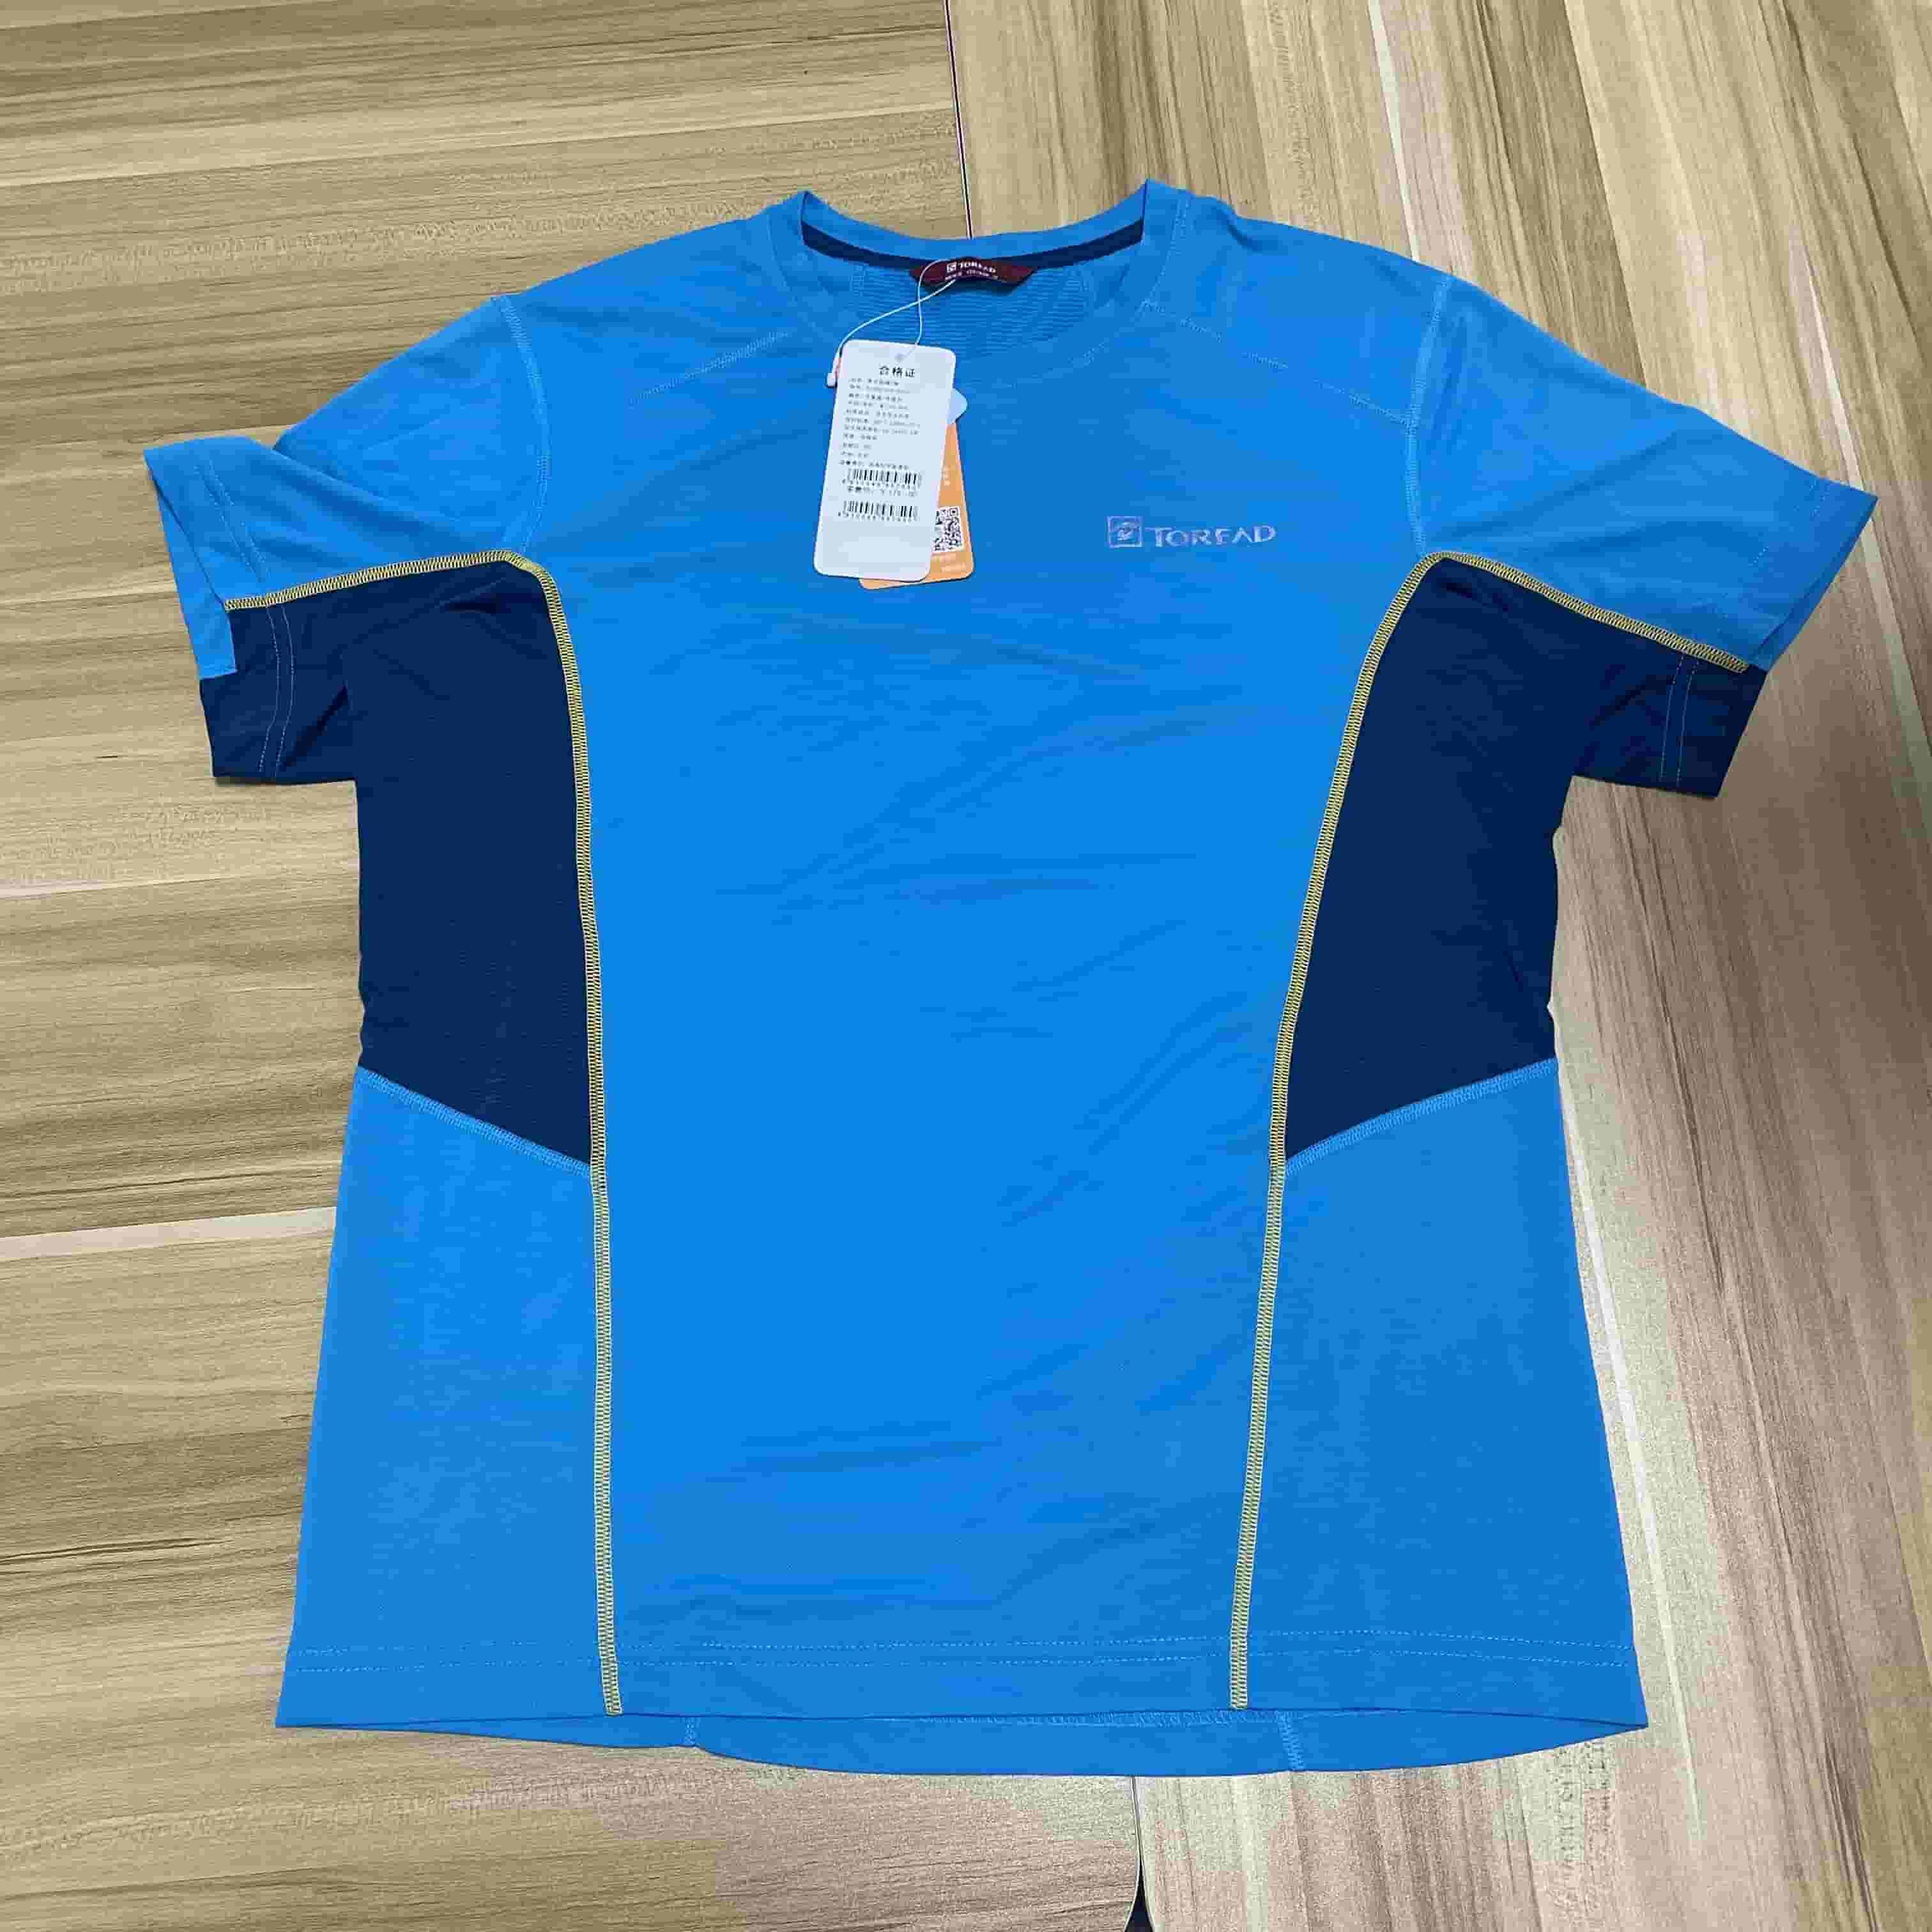 探路者男式短袖T恤-孔雀蓝/铁蓝灰KAJE81355-C12C